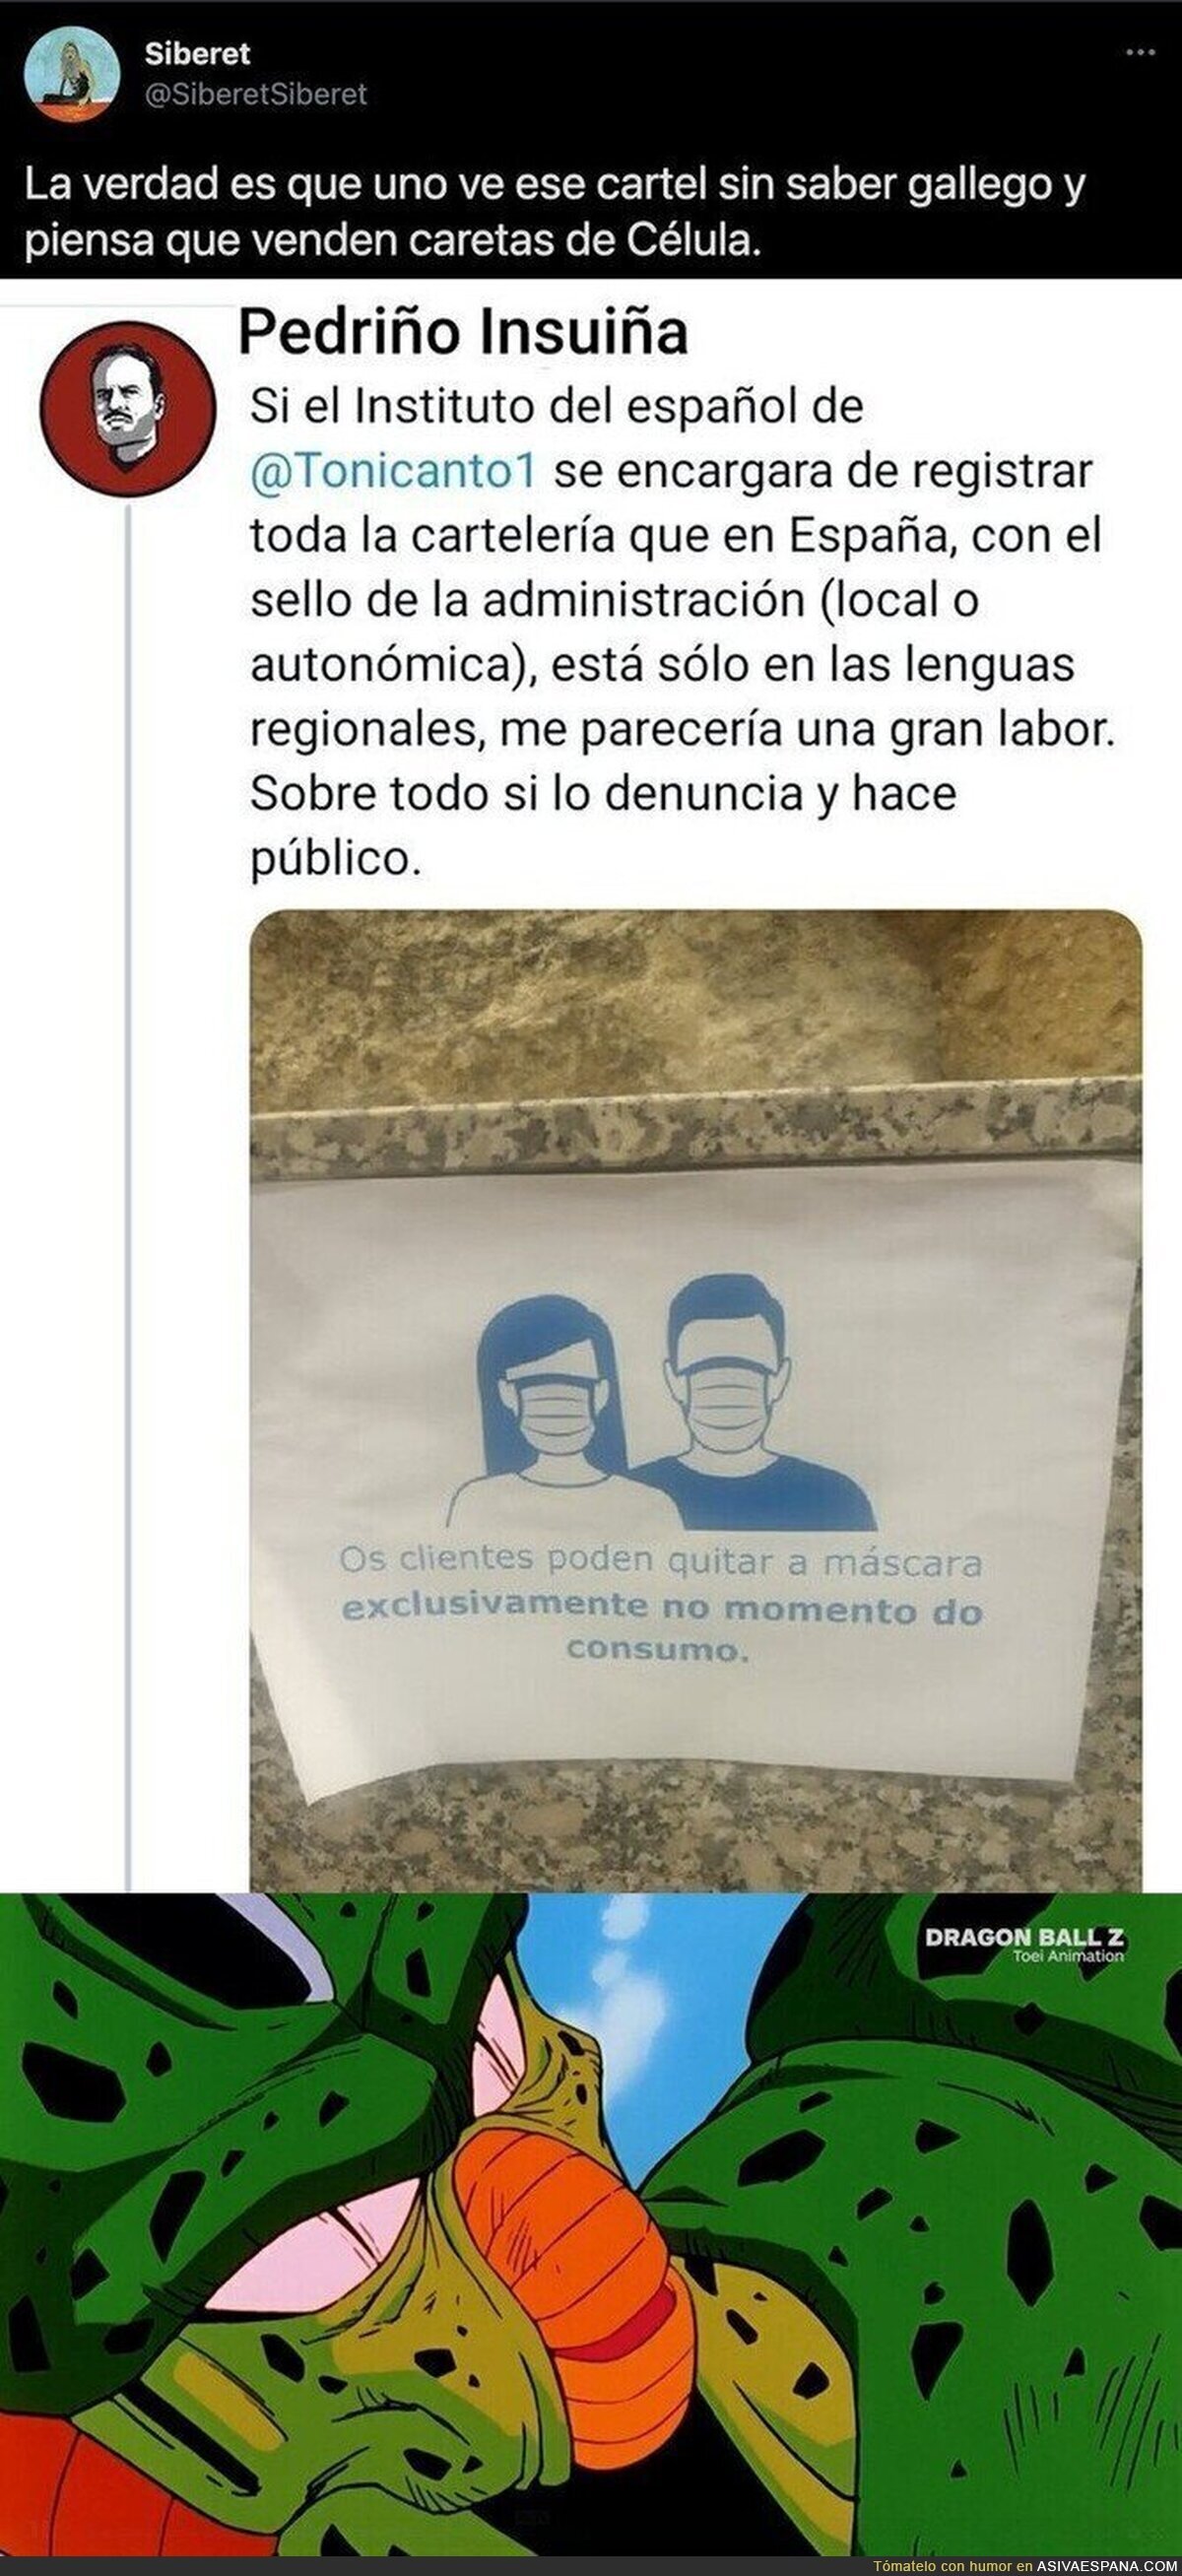 El "polémico" cartel en gallego sobre las mascarillas en un local que ha molestado a esta persona